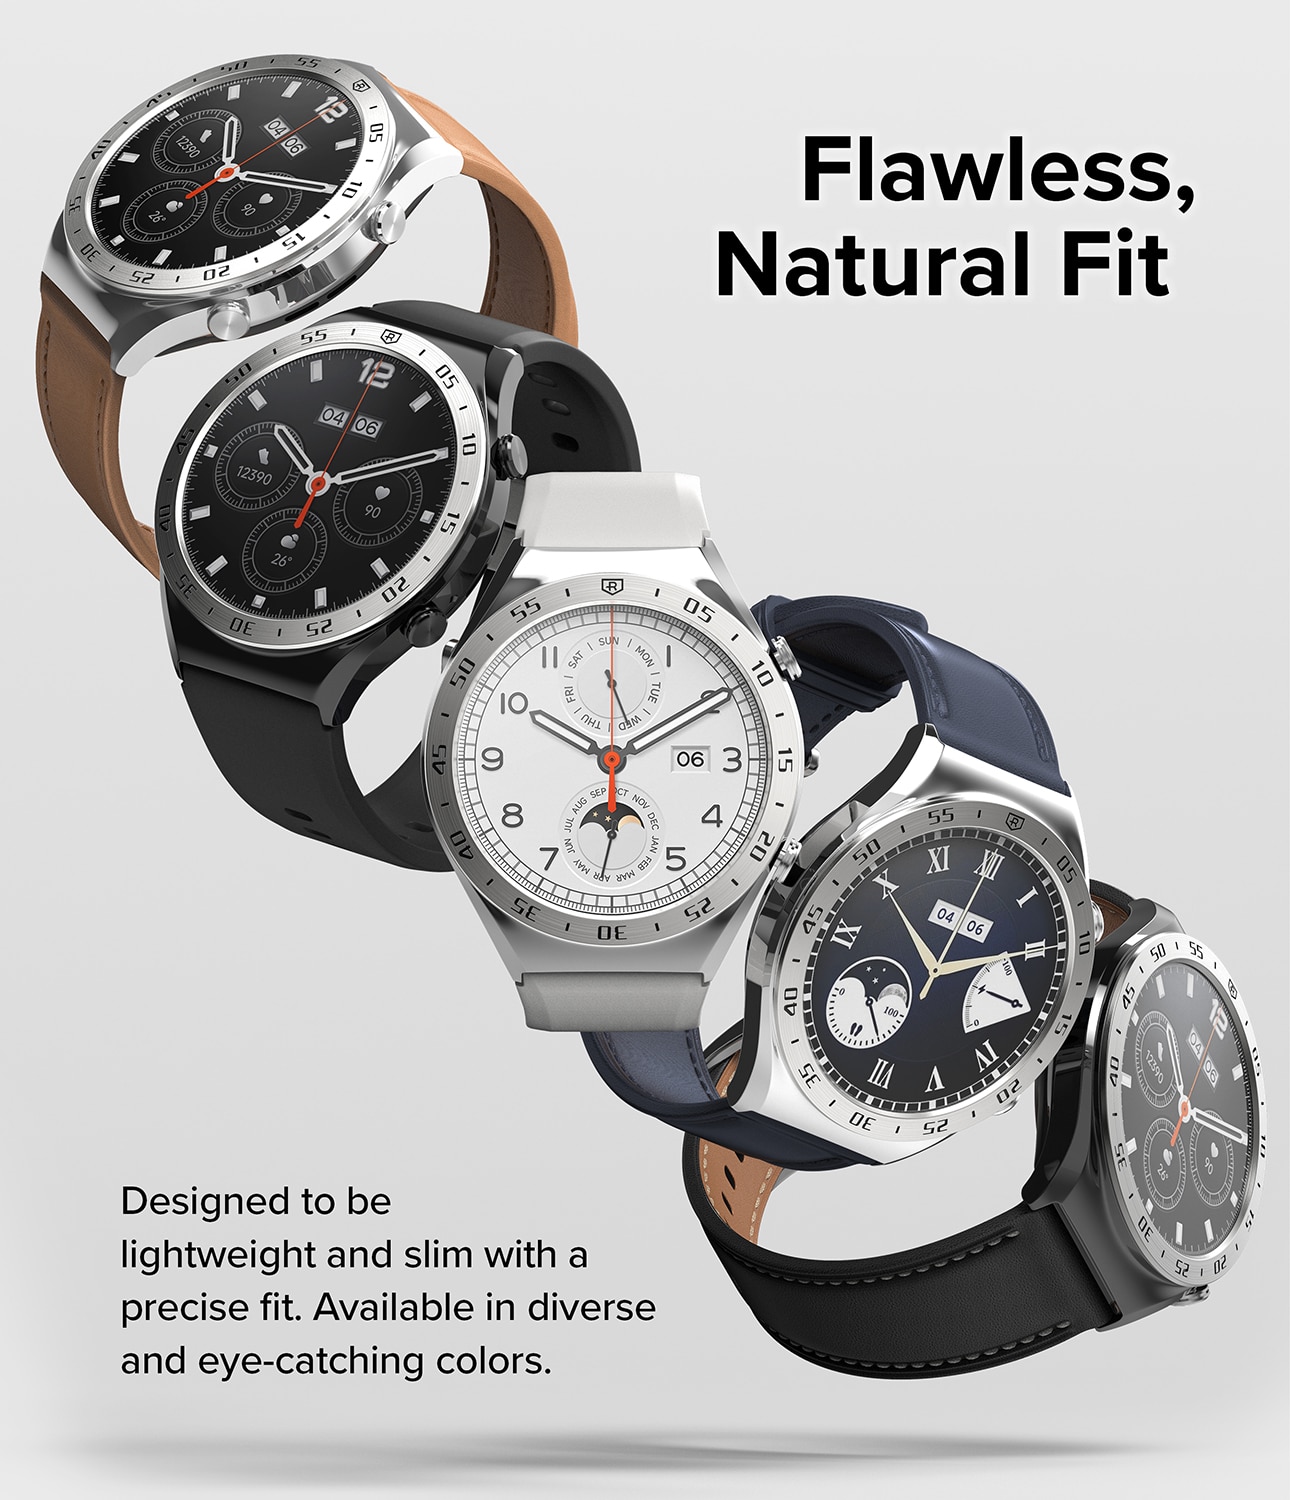 Xiaomi Watch S1 Bezel Styling Silver